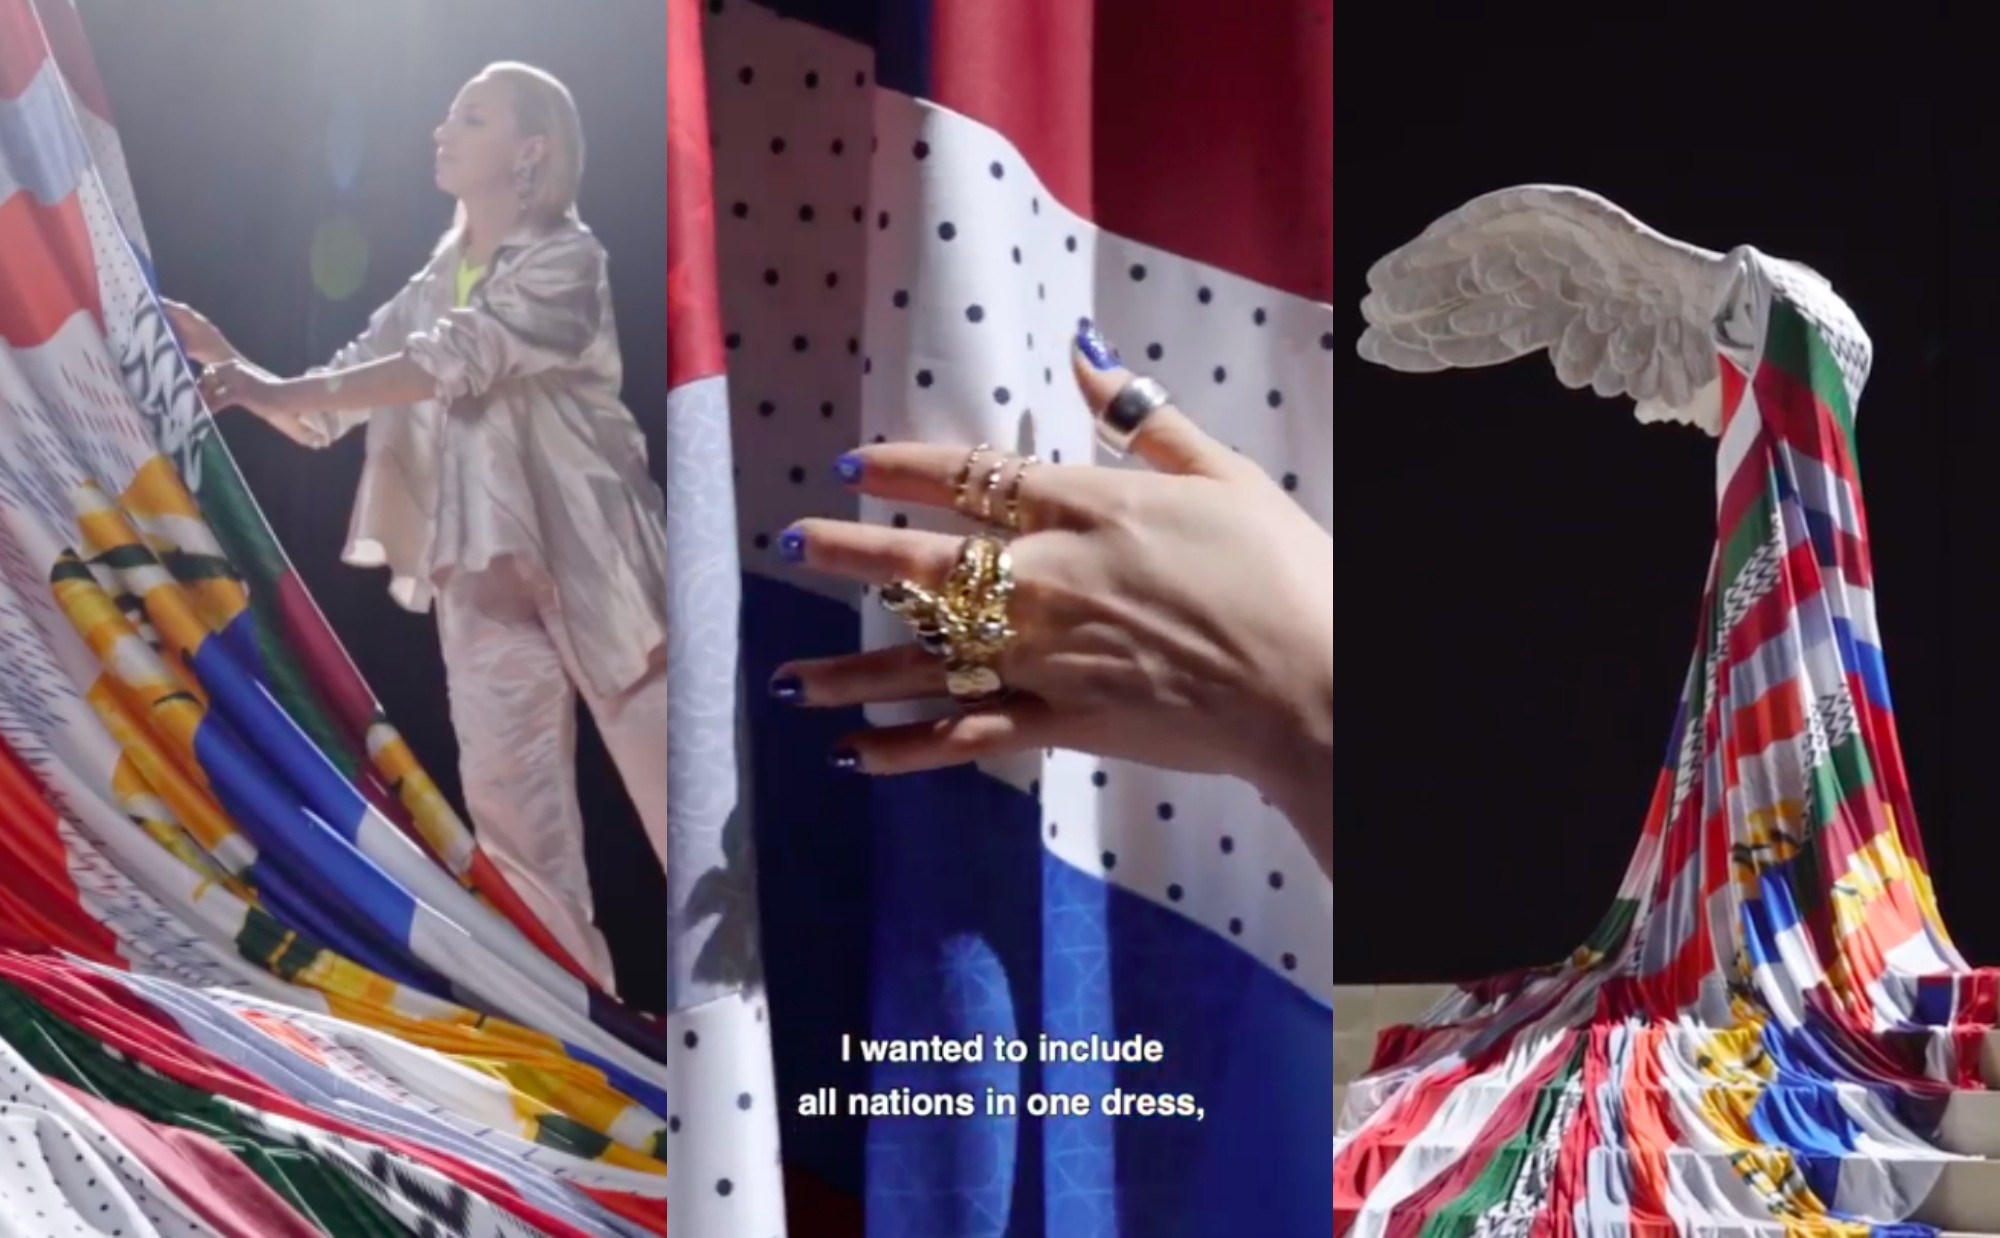 Nike попросили Кристель Коше создать платье для статуи богини Ники